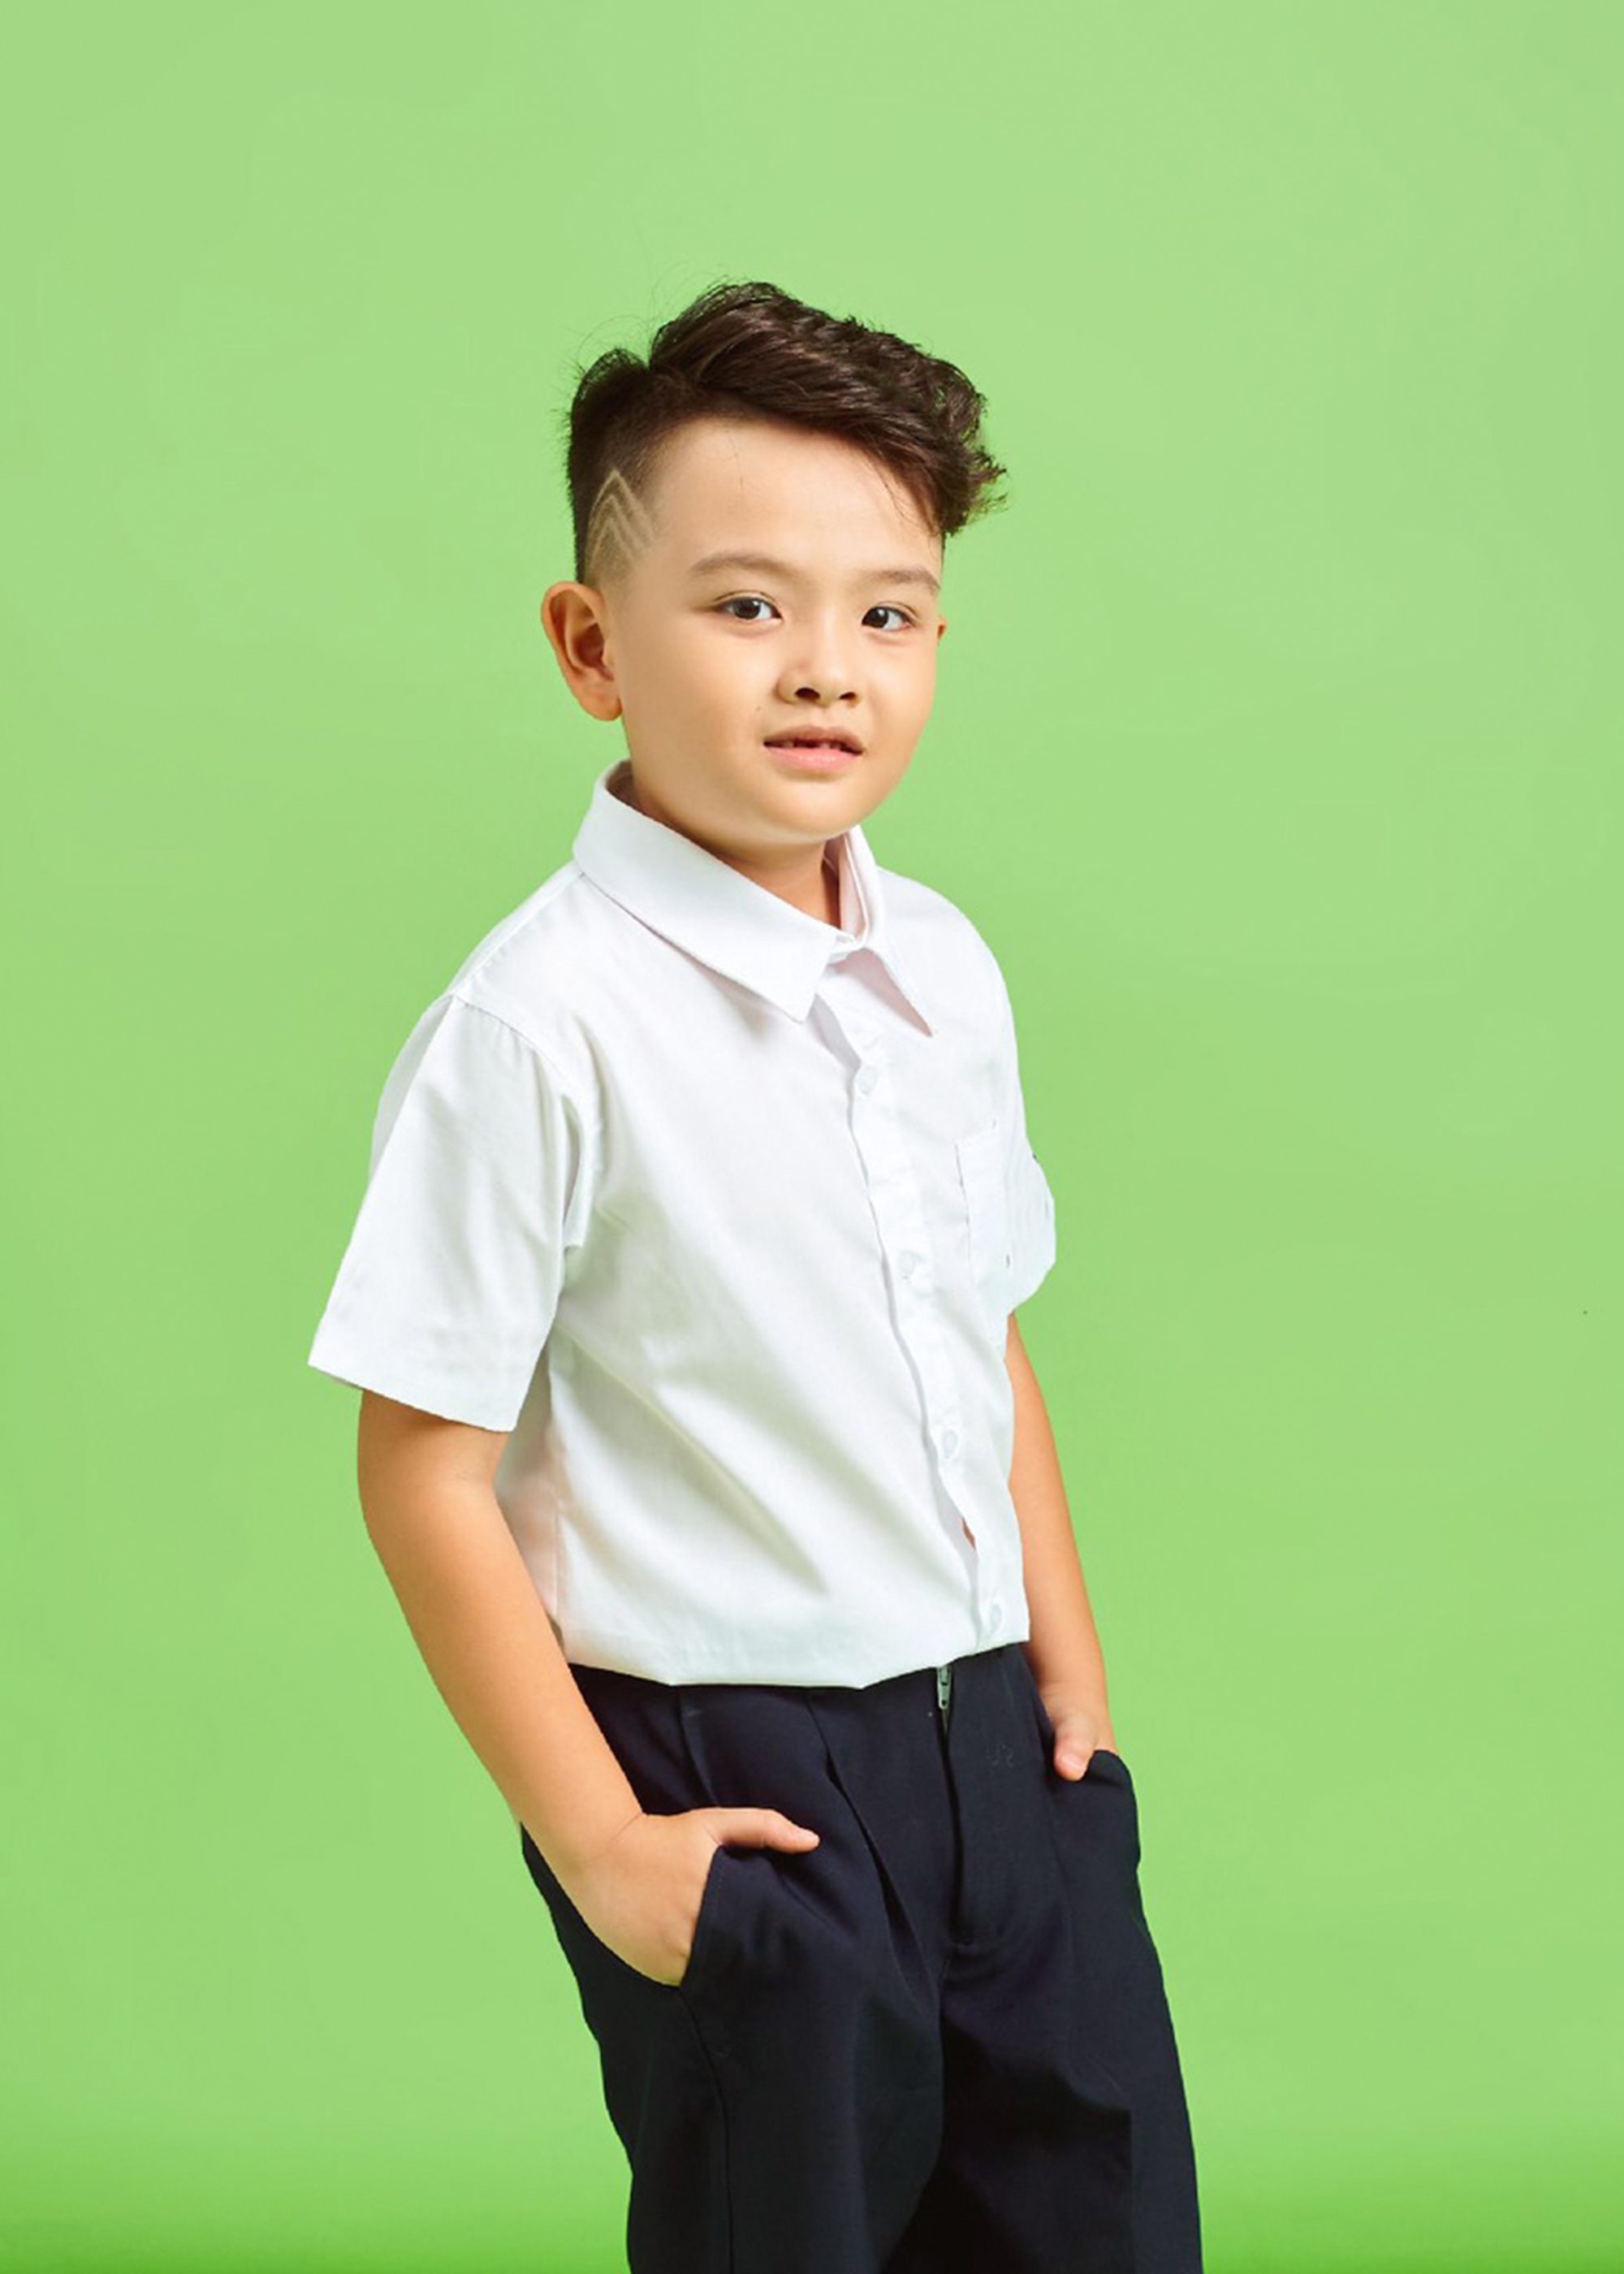 Đồng phục áo trắng quần xanh đen đi học cho bé trai, bộ đồng phục học sinh đi học lớp 1, cấp 1 thoáng mát, vải tốt, thấm hút mồ hôi (lựa chọn mua áo riêng, quần riêng)